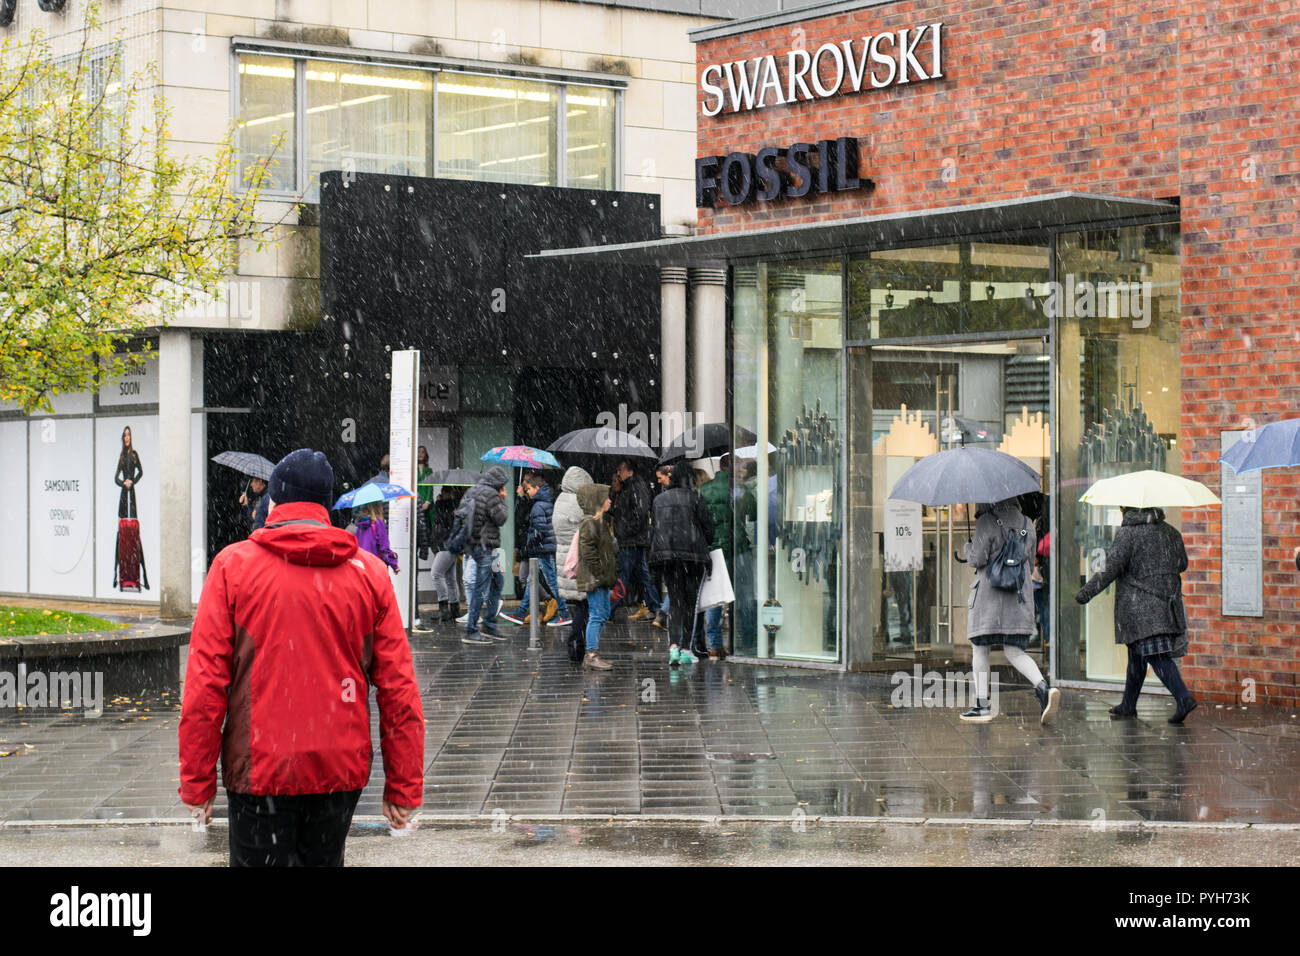 La febbre dello shopping in Outletcity Metzingen, Germania. 28.10.2018, Swarovsky e vendita di fossili. Giorno di pioggia, vista sulla strada, persone e negozi. Foto Stock